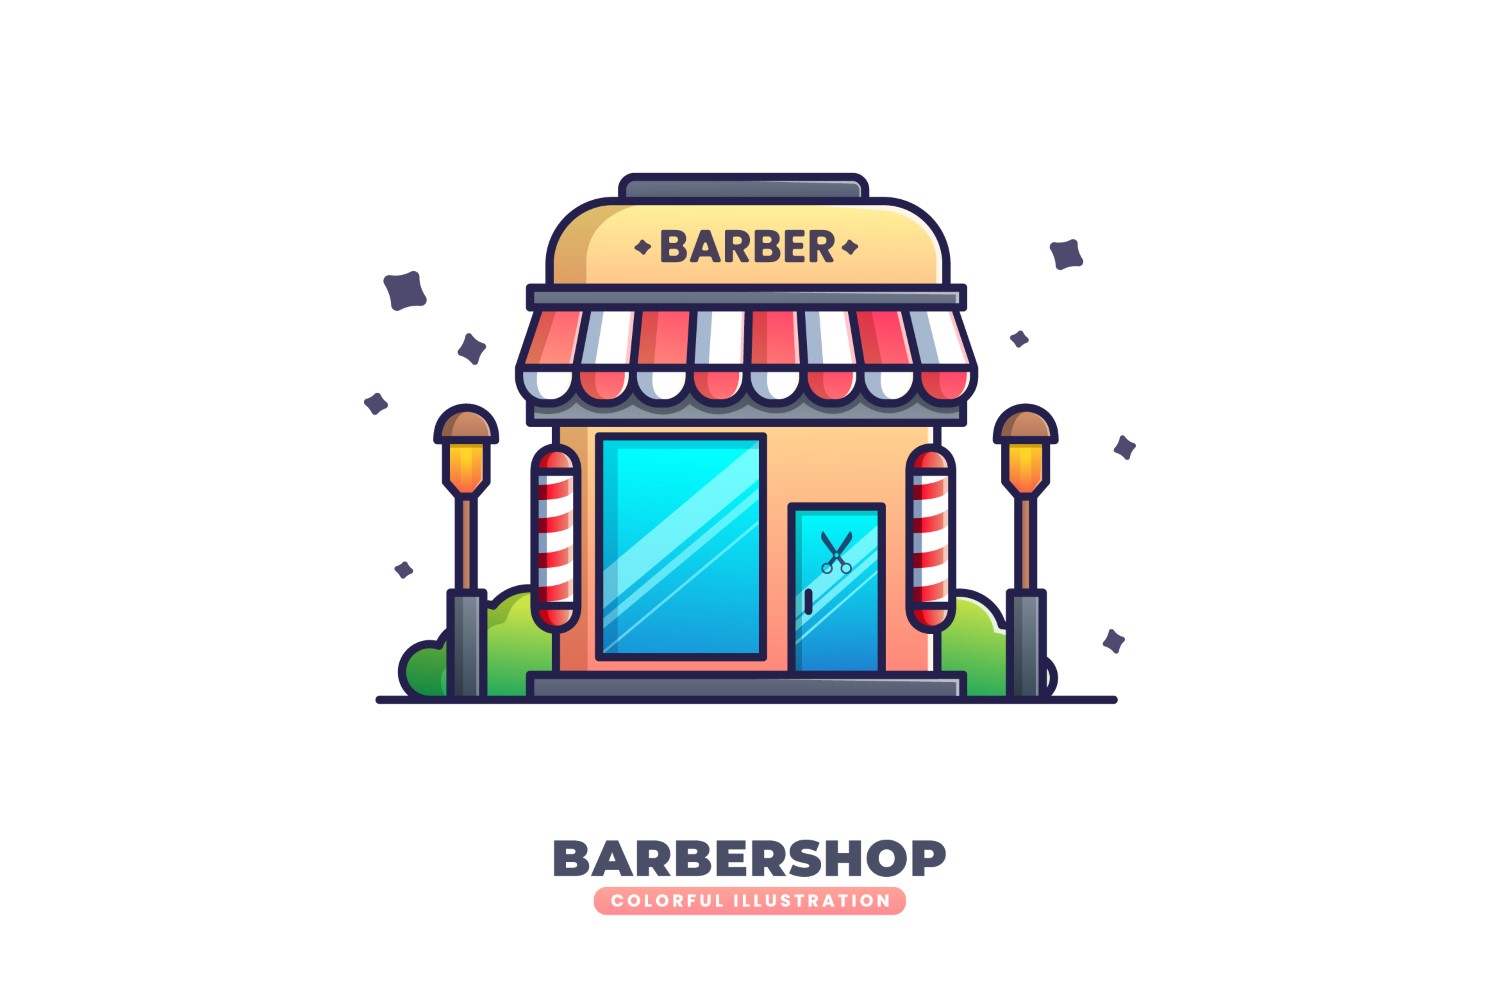 Barber Shop Building Illustration